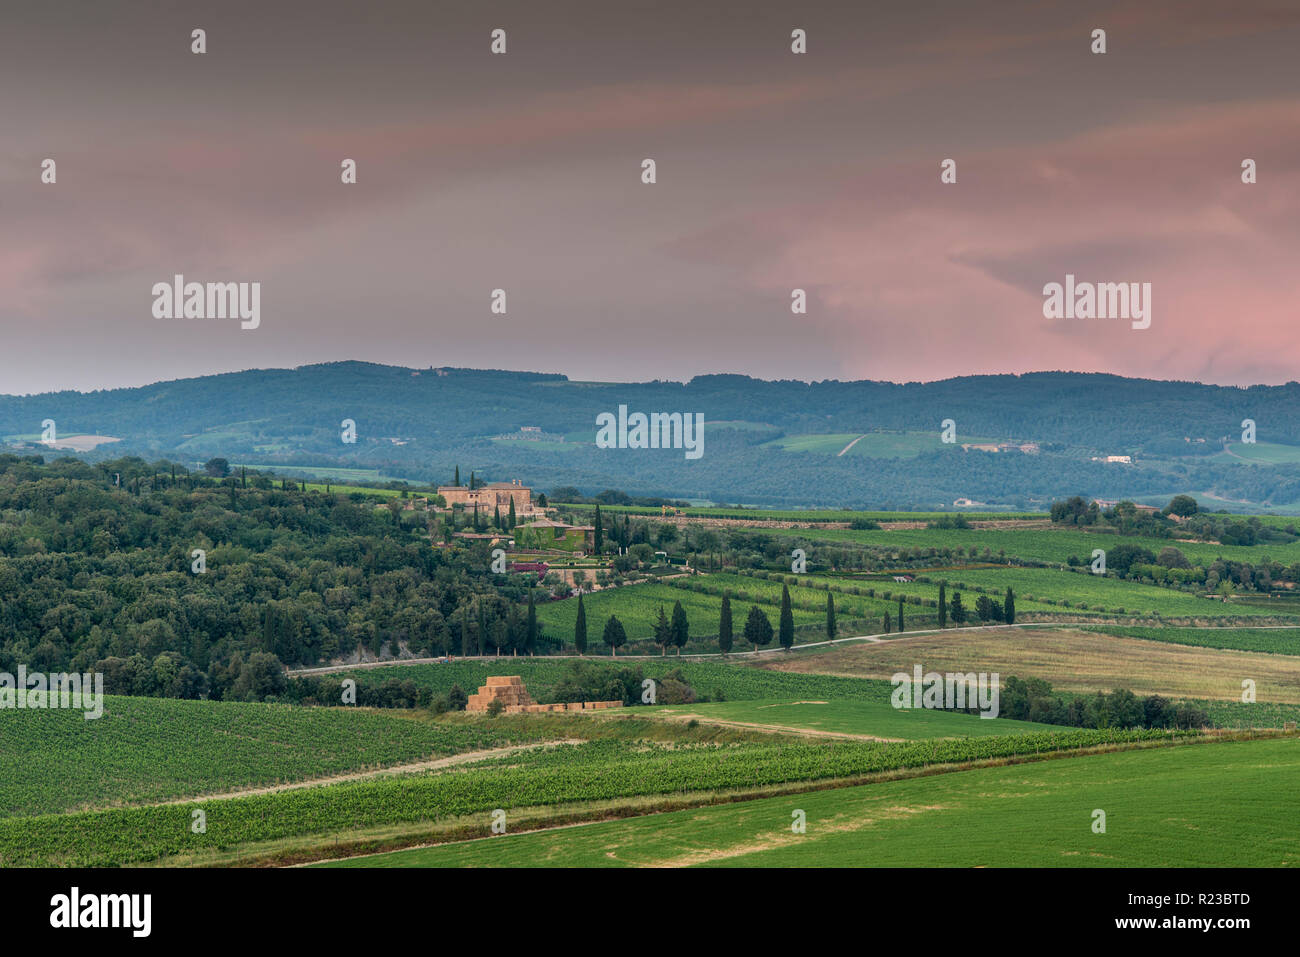 Vineyards in Camigliano, Tuscany, Italy Stock Photo